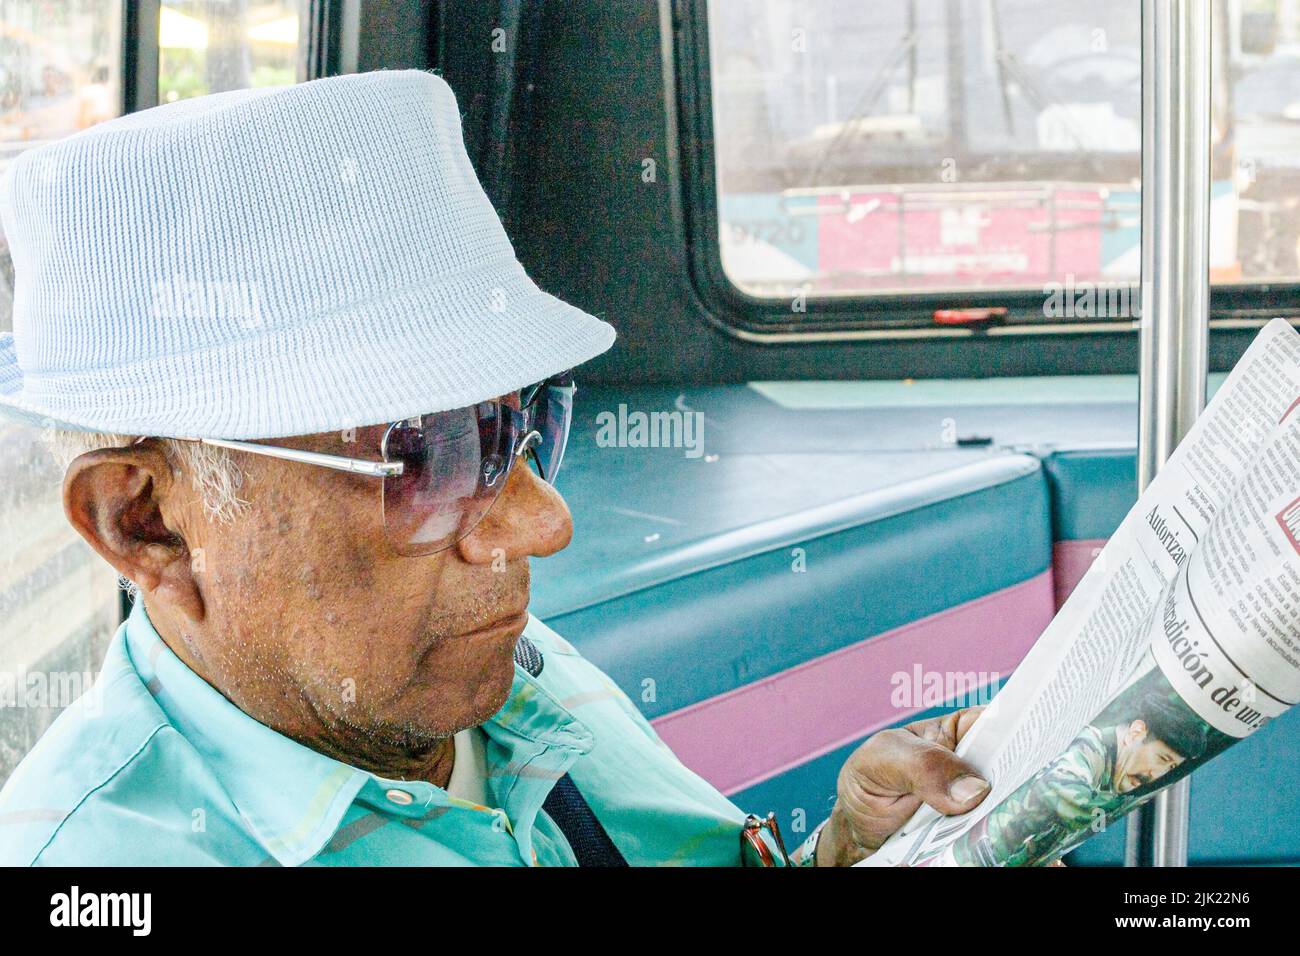 Miami Beach Florida,Miami-Dade Metrobus a bordo del interior del autobús público pasajeros jinetes, transporte hombre hispano leyendo el periódico Foto de stock